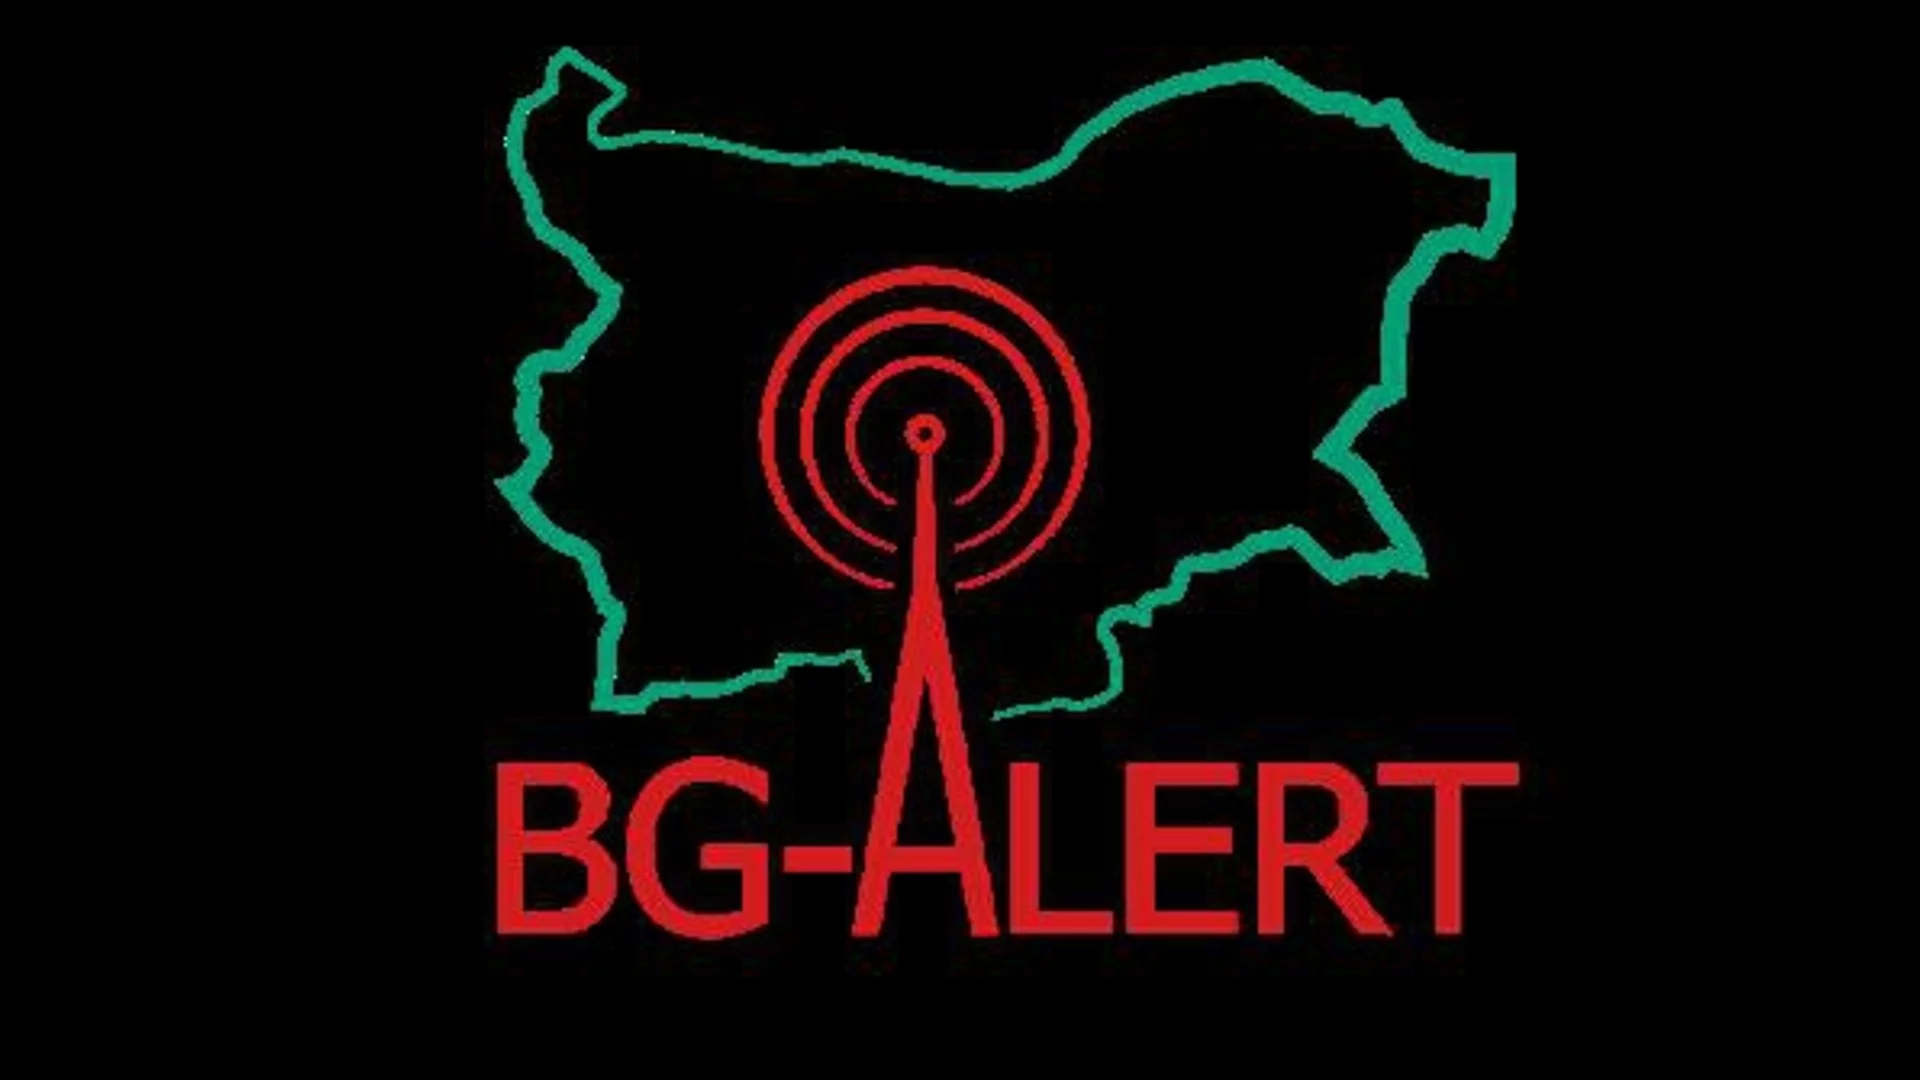 След земетресението край Асеновград: Защо системата BG-ALERT не предупреждава?